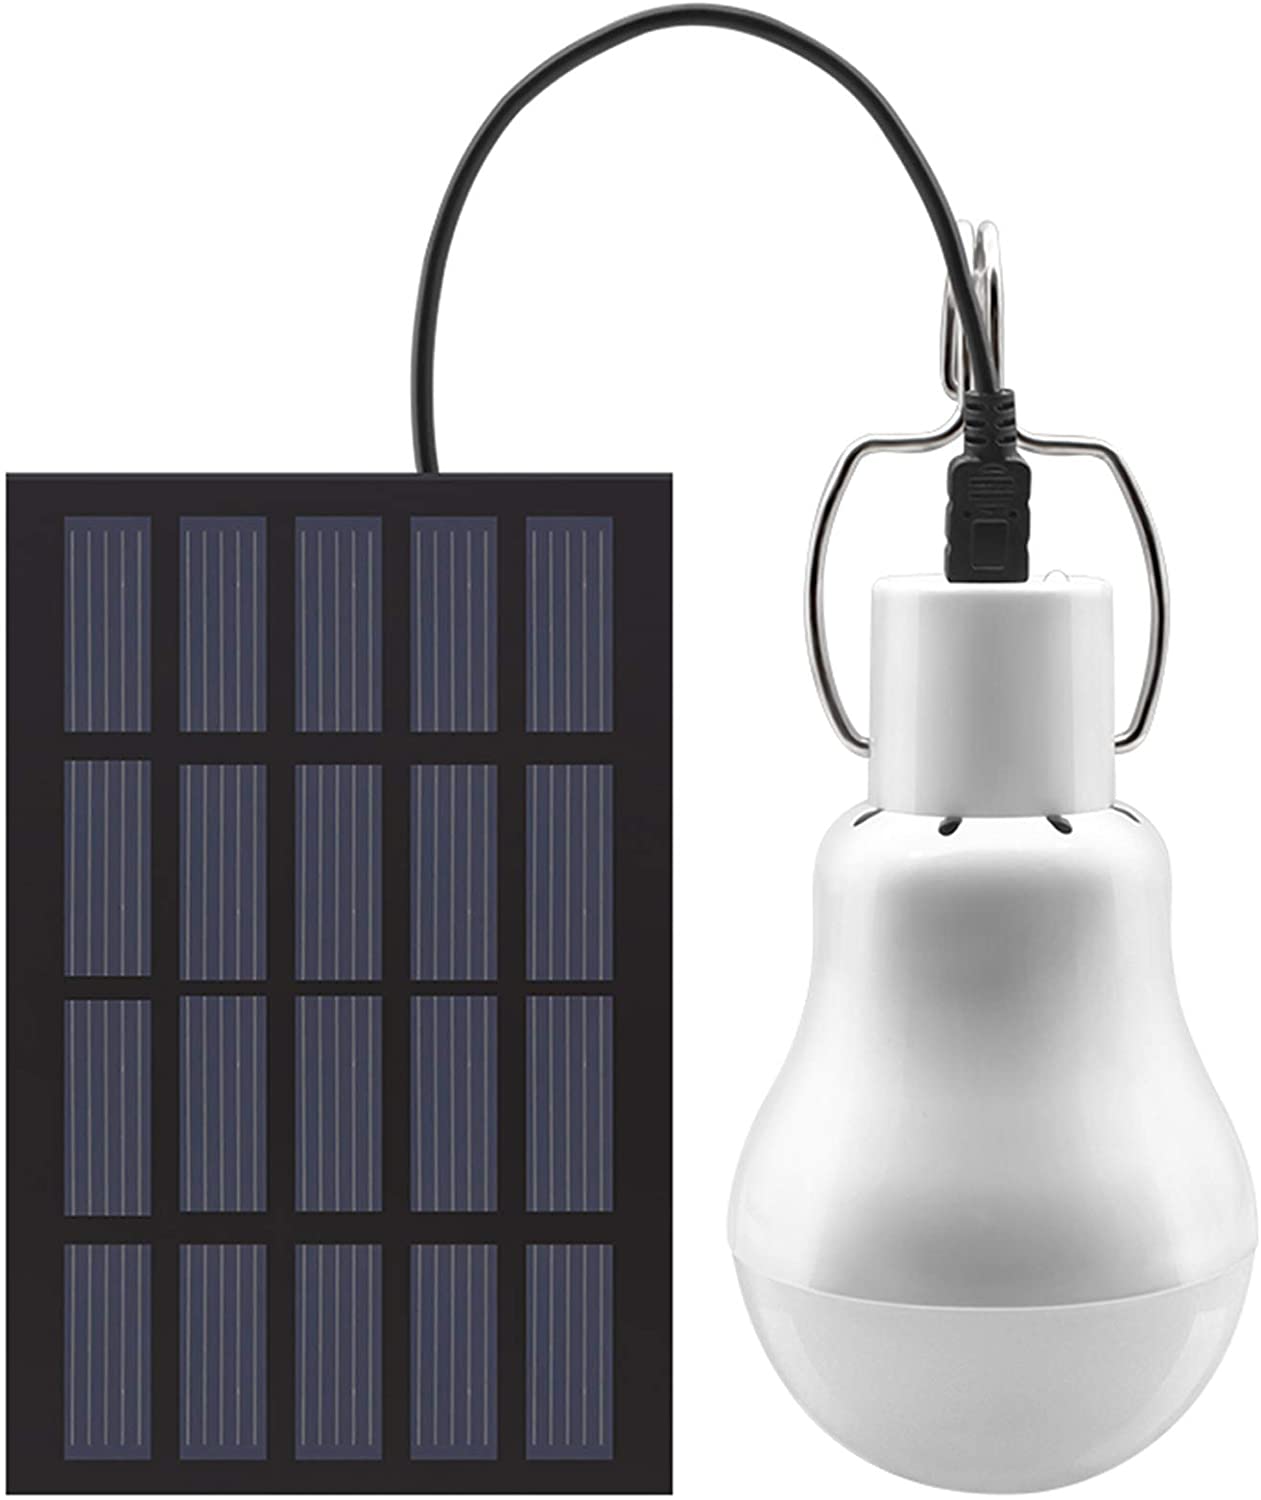 Luces solares, lámpara solar portátil de 110 lm, bombilla solar recargable  para interior y exterior, tienda de campaña, patio, garde